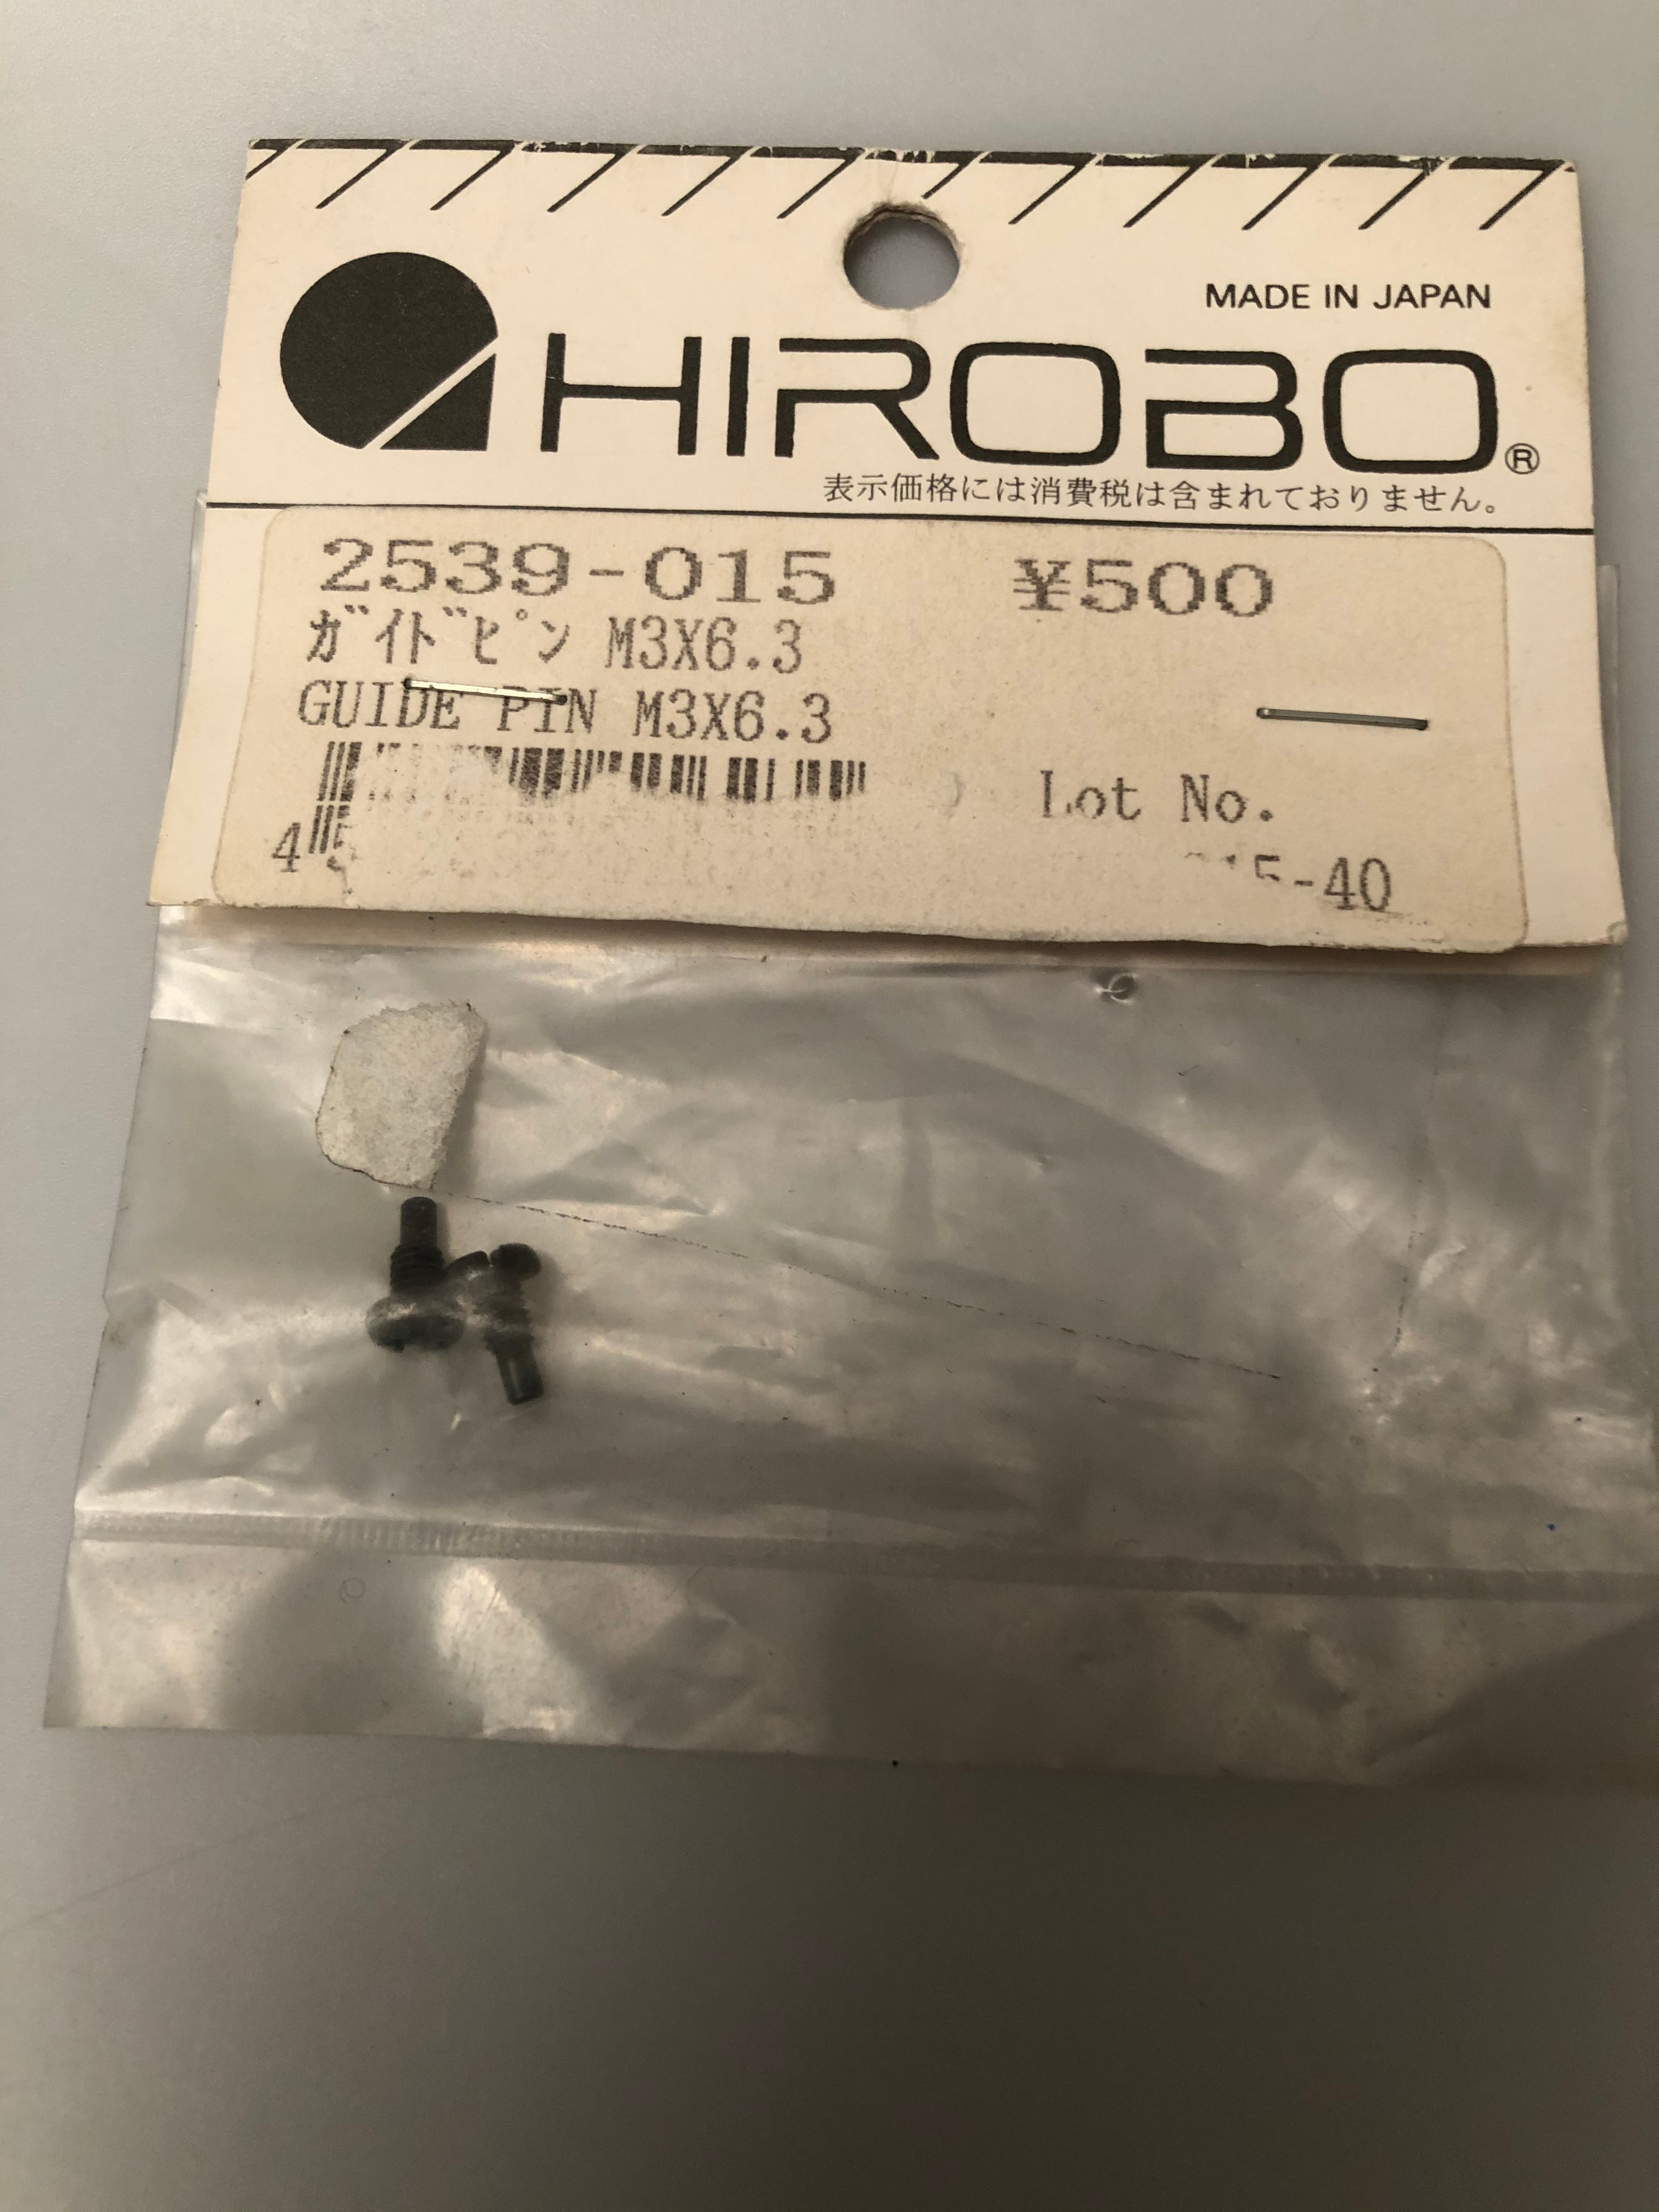 Hirobo 2539-015 Guide Pin M3x6.3 HIR2539015